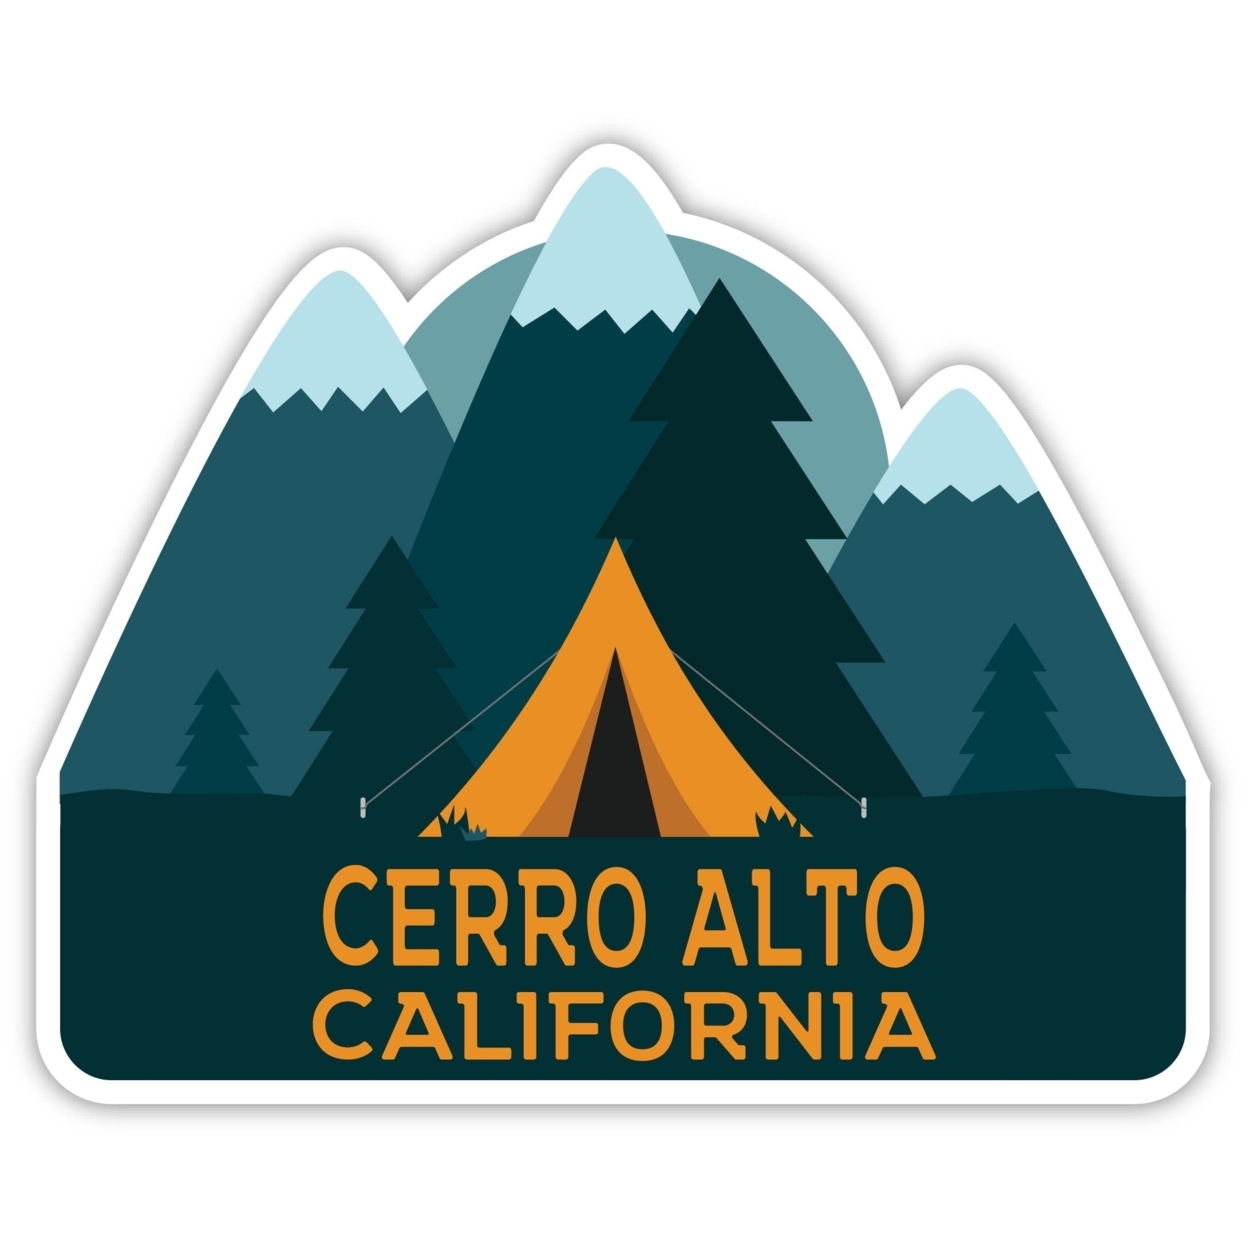 Cerro Alto California Souvenir Decorative Stickers (Choose Theme And Size) - 4-Pack, 12-Inch, Tent